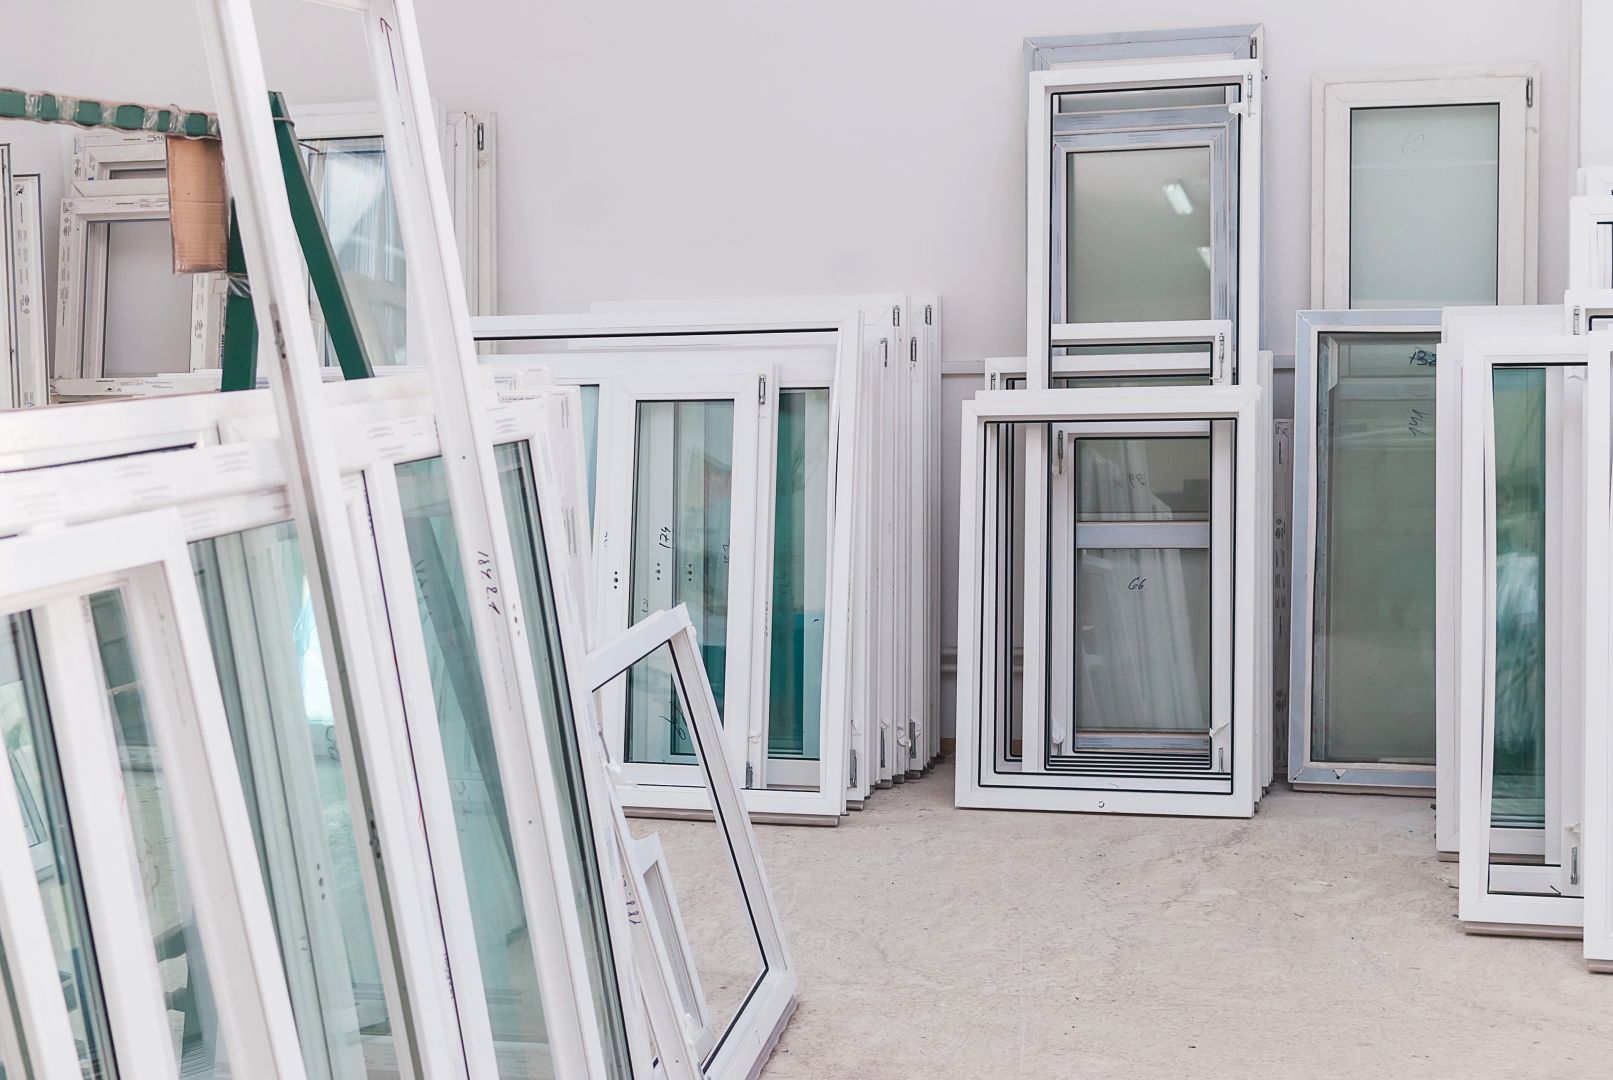 Poptávka na dodání a osazení střešního okna Velux (Okna) - Mělník